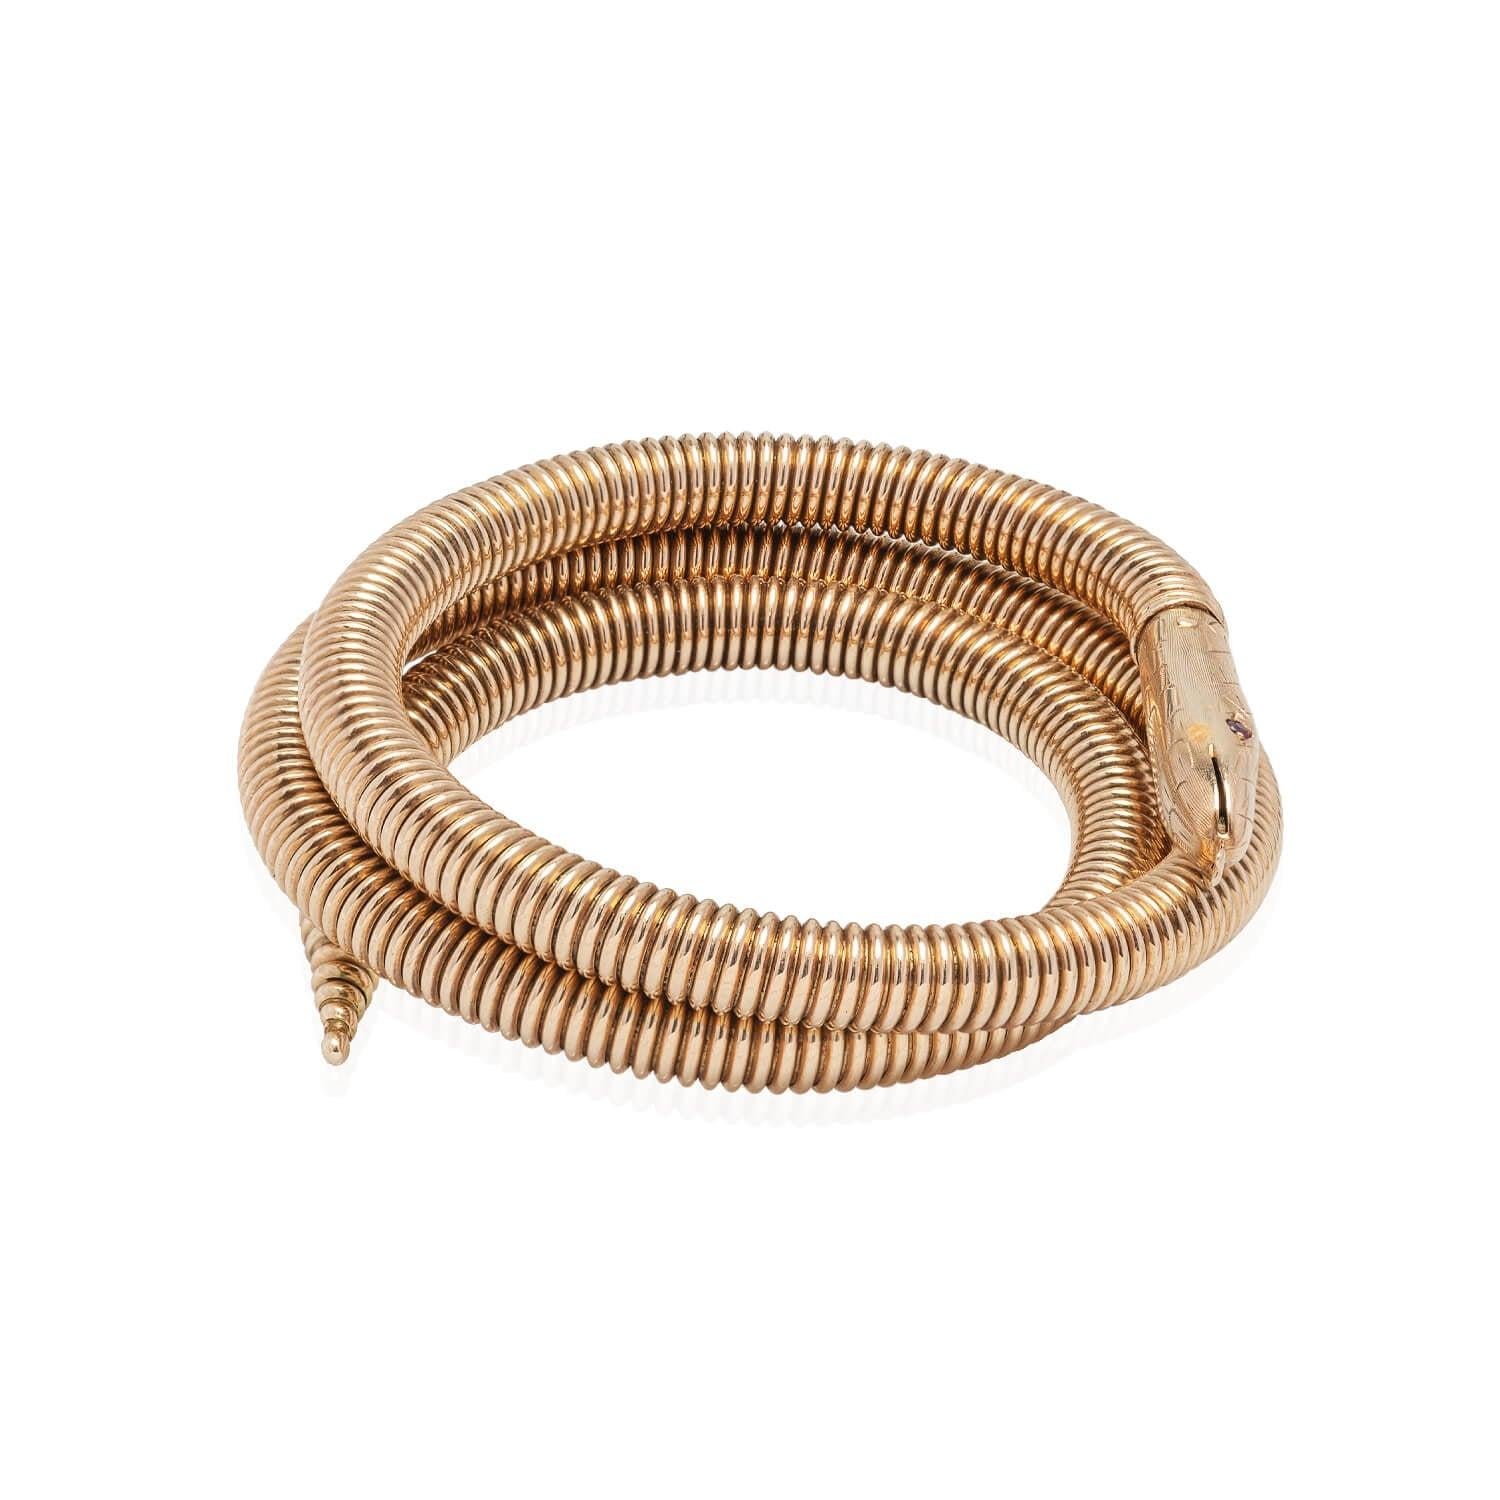 Un fabuleux bracelet serpent de l'époque Rétro (ca1940s) ! Réalisée en or jaune 14kt, cette magnifique pièce a la forme d'un serpent tridimensionnel. Une chaîne serpentine étroitement enroulée donne une merveilleuse texture au design, se